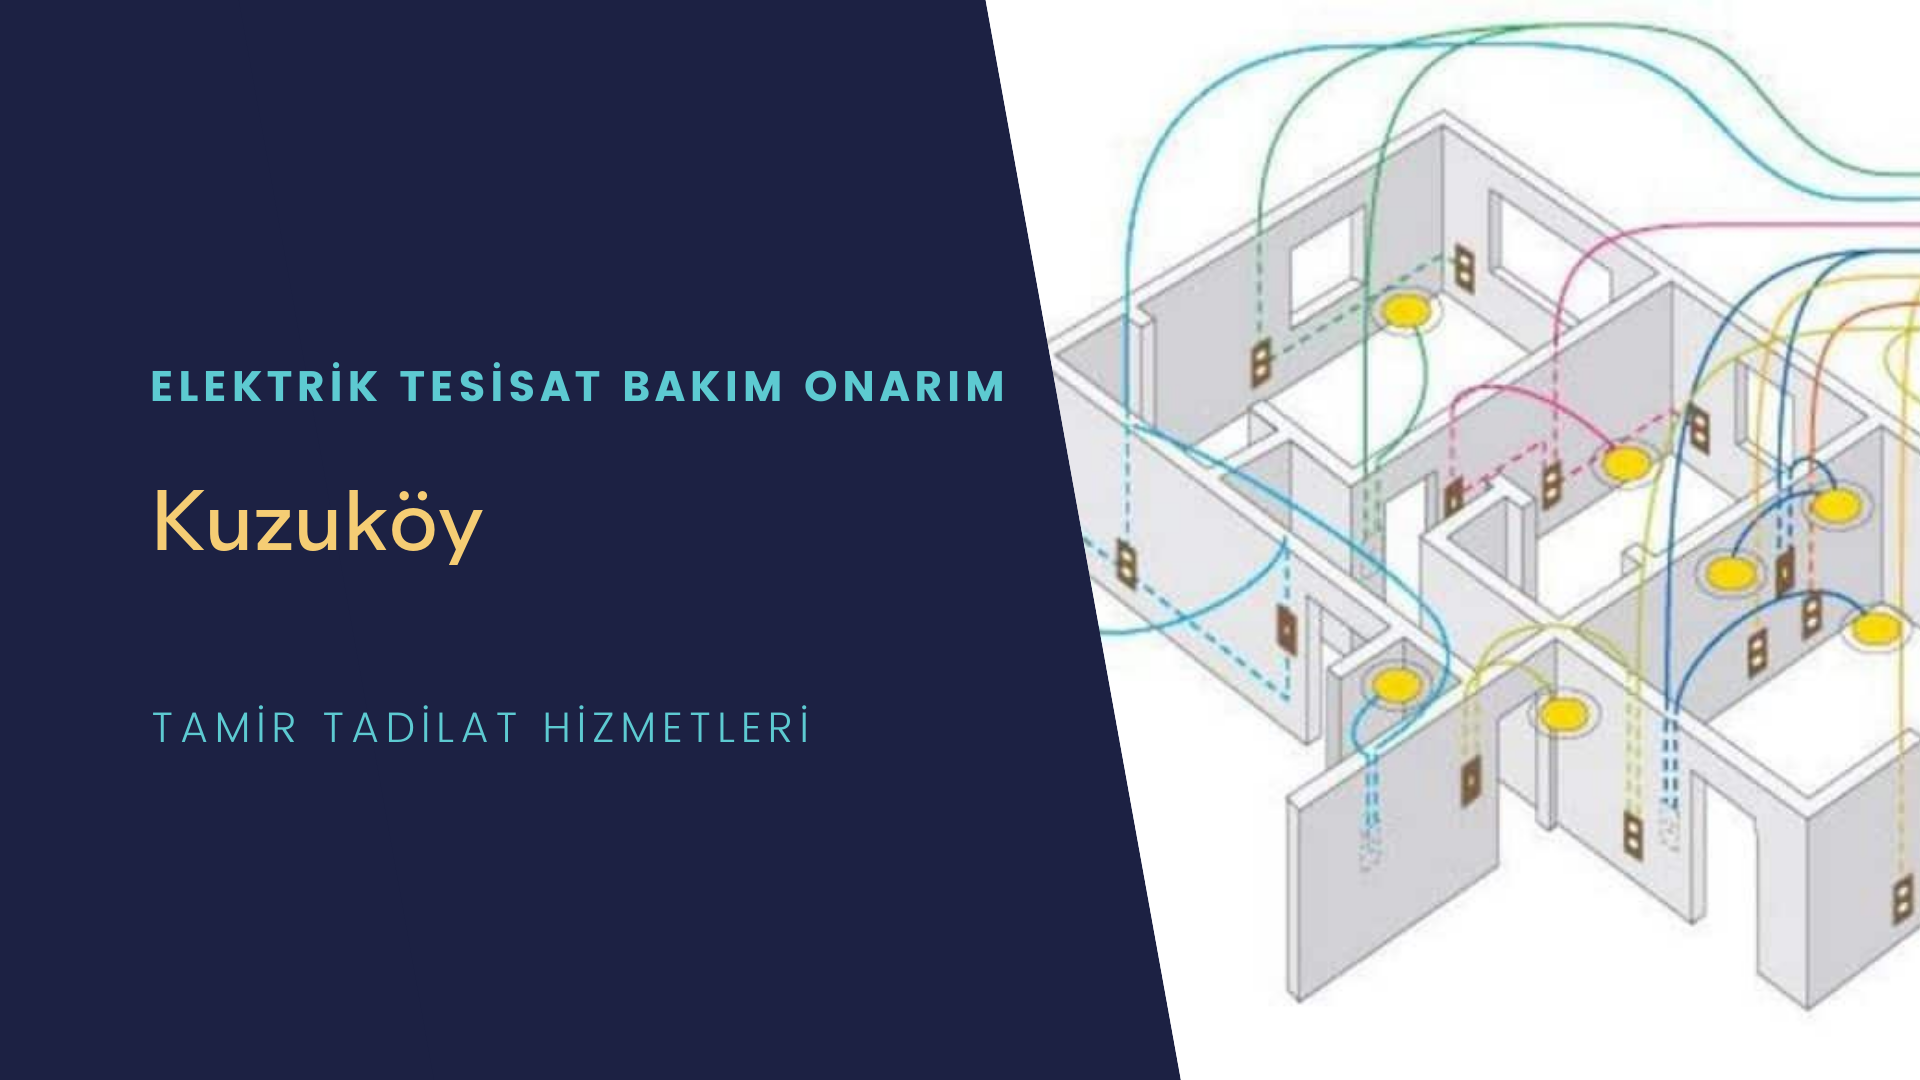 Kuzuköy'de elektrik tesisatı ustalarımı arıyorsunuz doğru adrestenizi Kuzuköy elektrik tesisatı ustalarımız 7/24 sizlere hizmet vermekten mutluluk duyar.